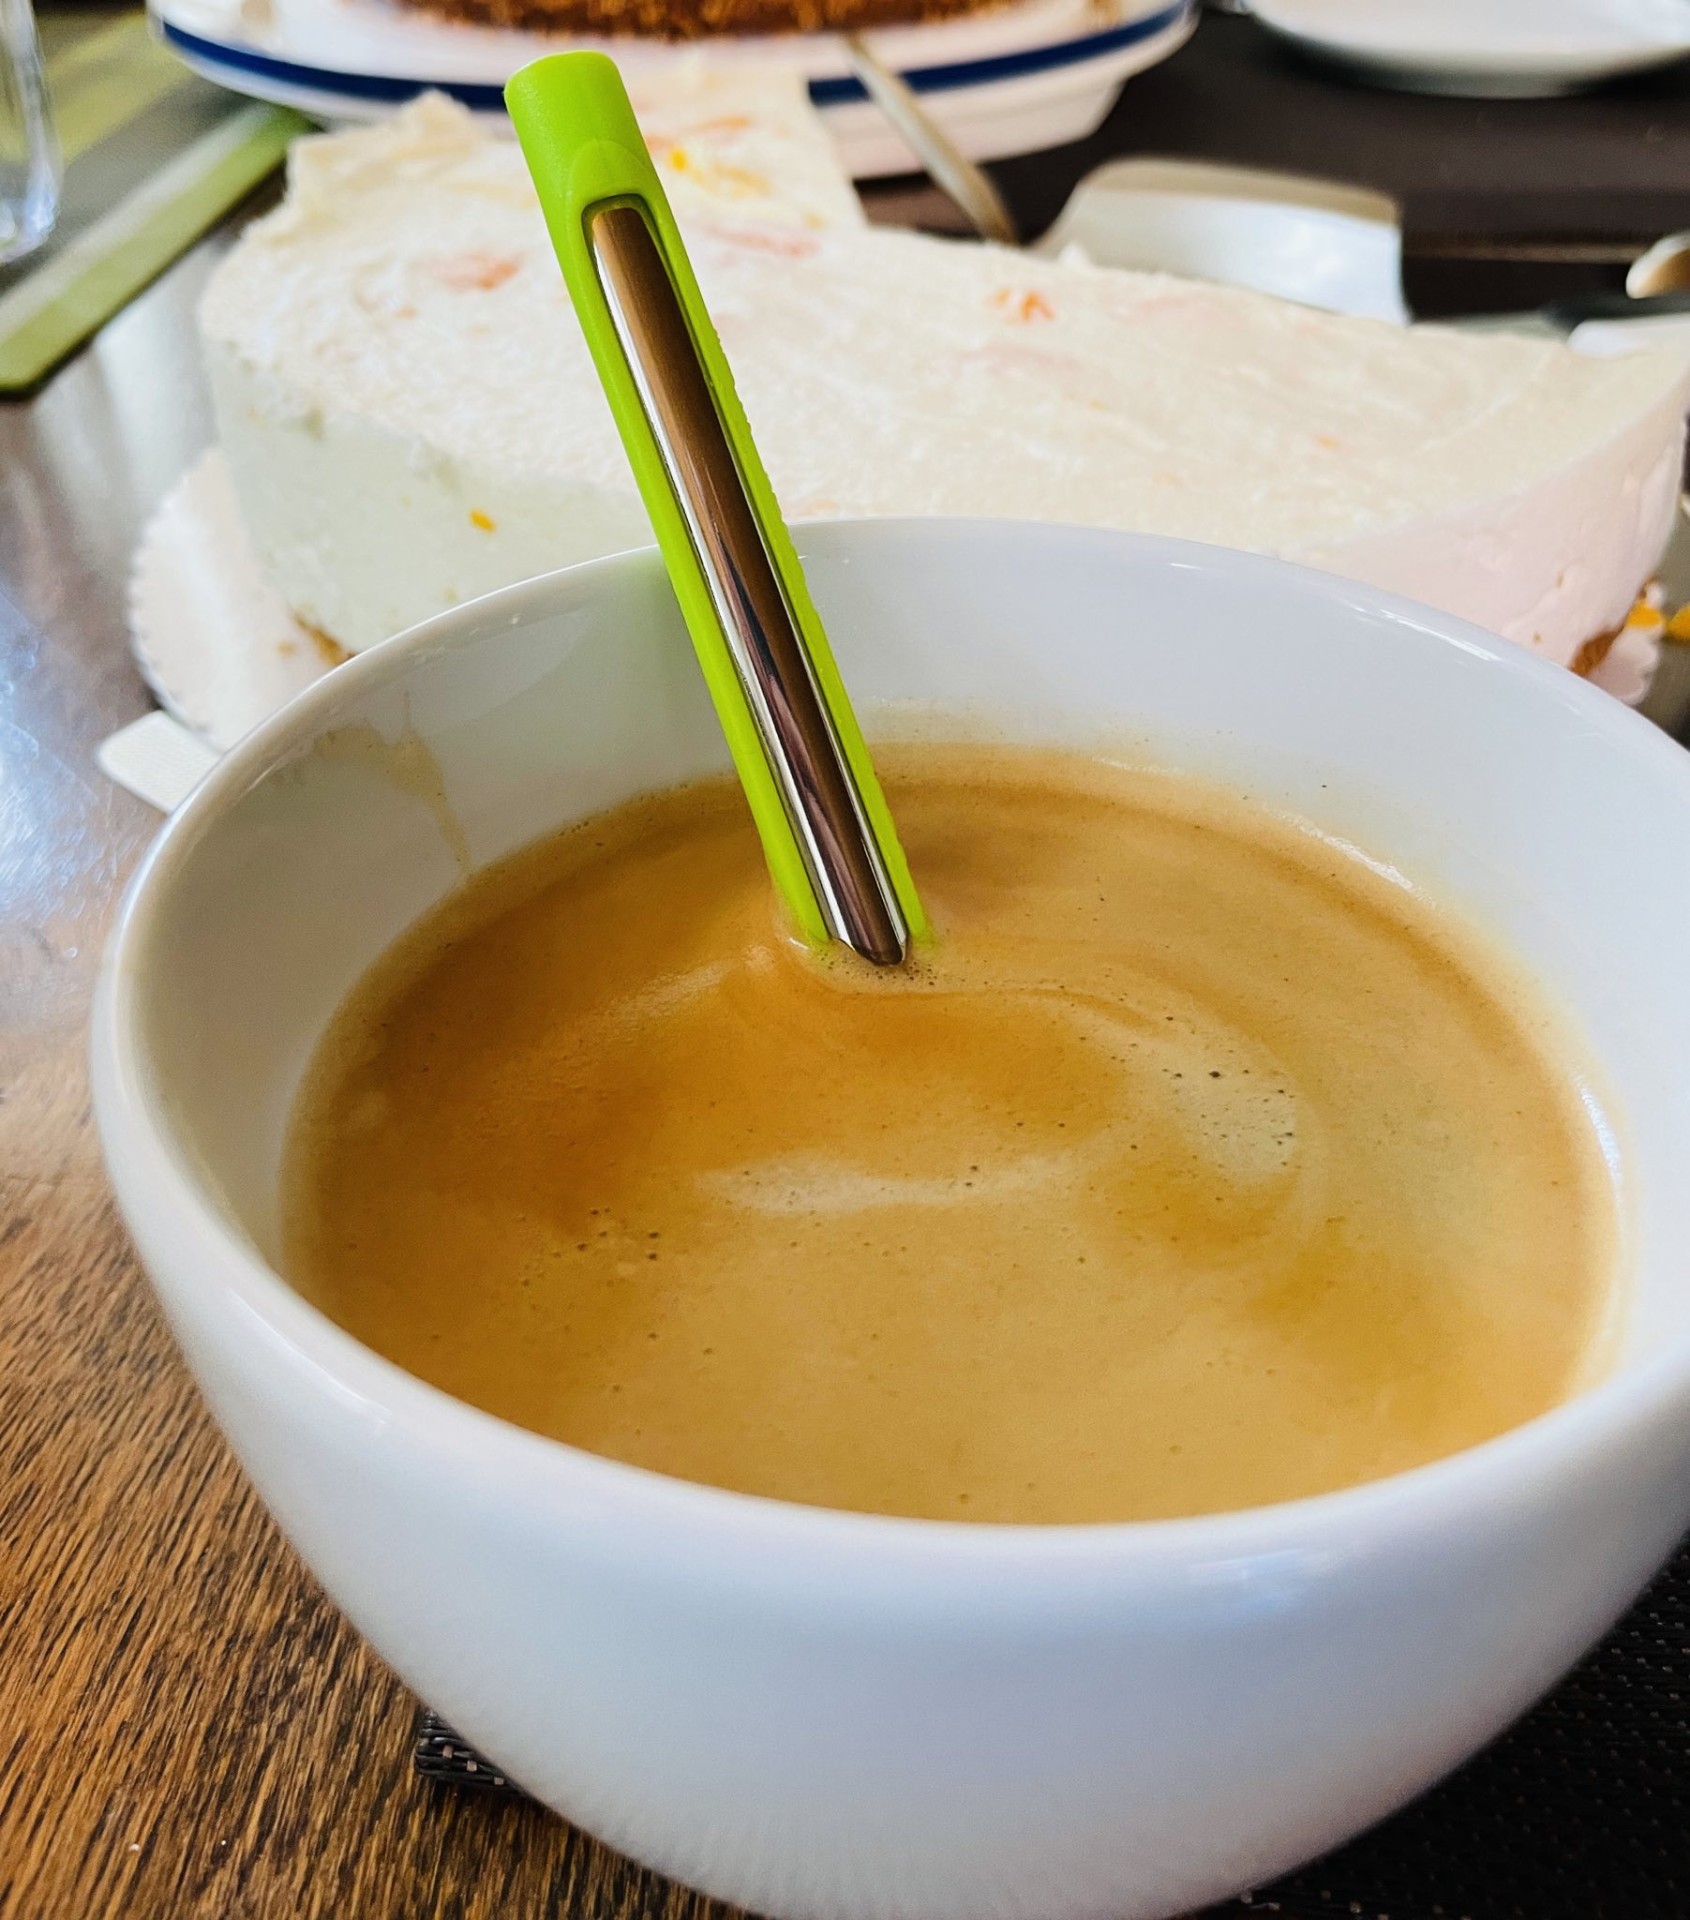 Der kaufMann Trinkhalm im Kaffee. Der Halm ist ideal für Heißgetränke geeignet.